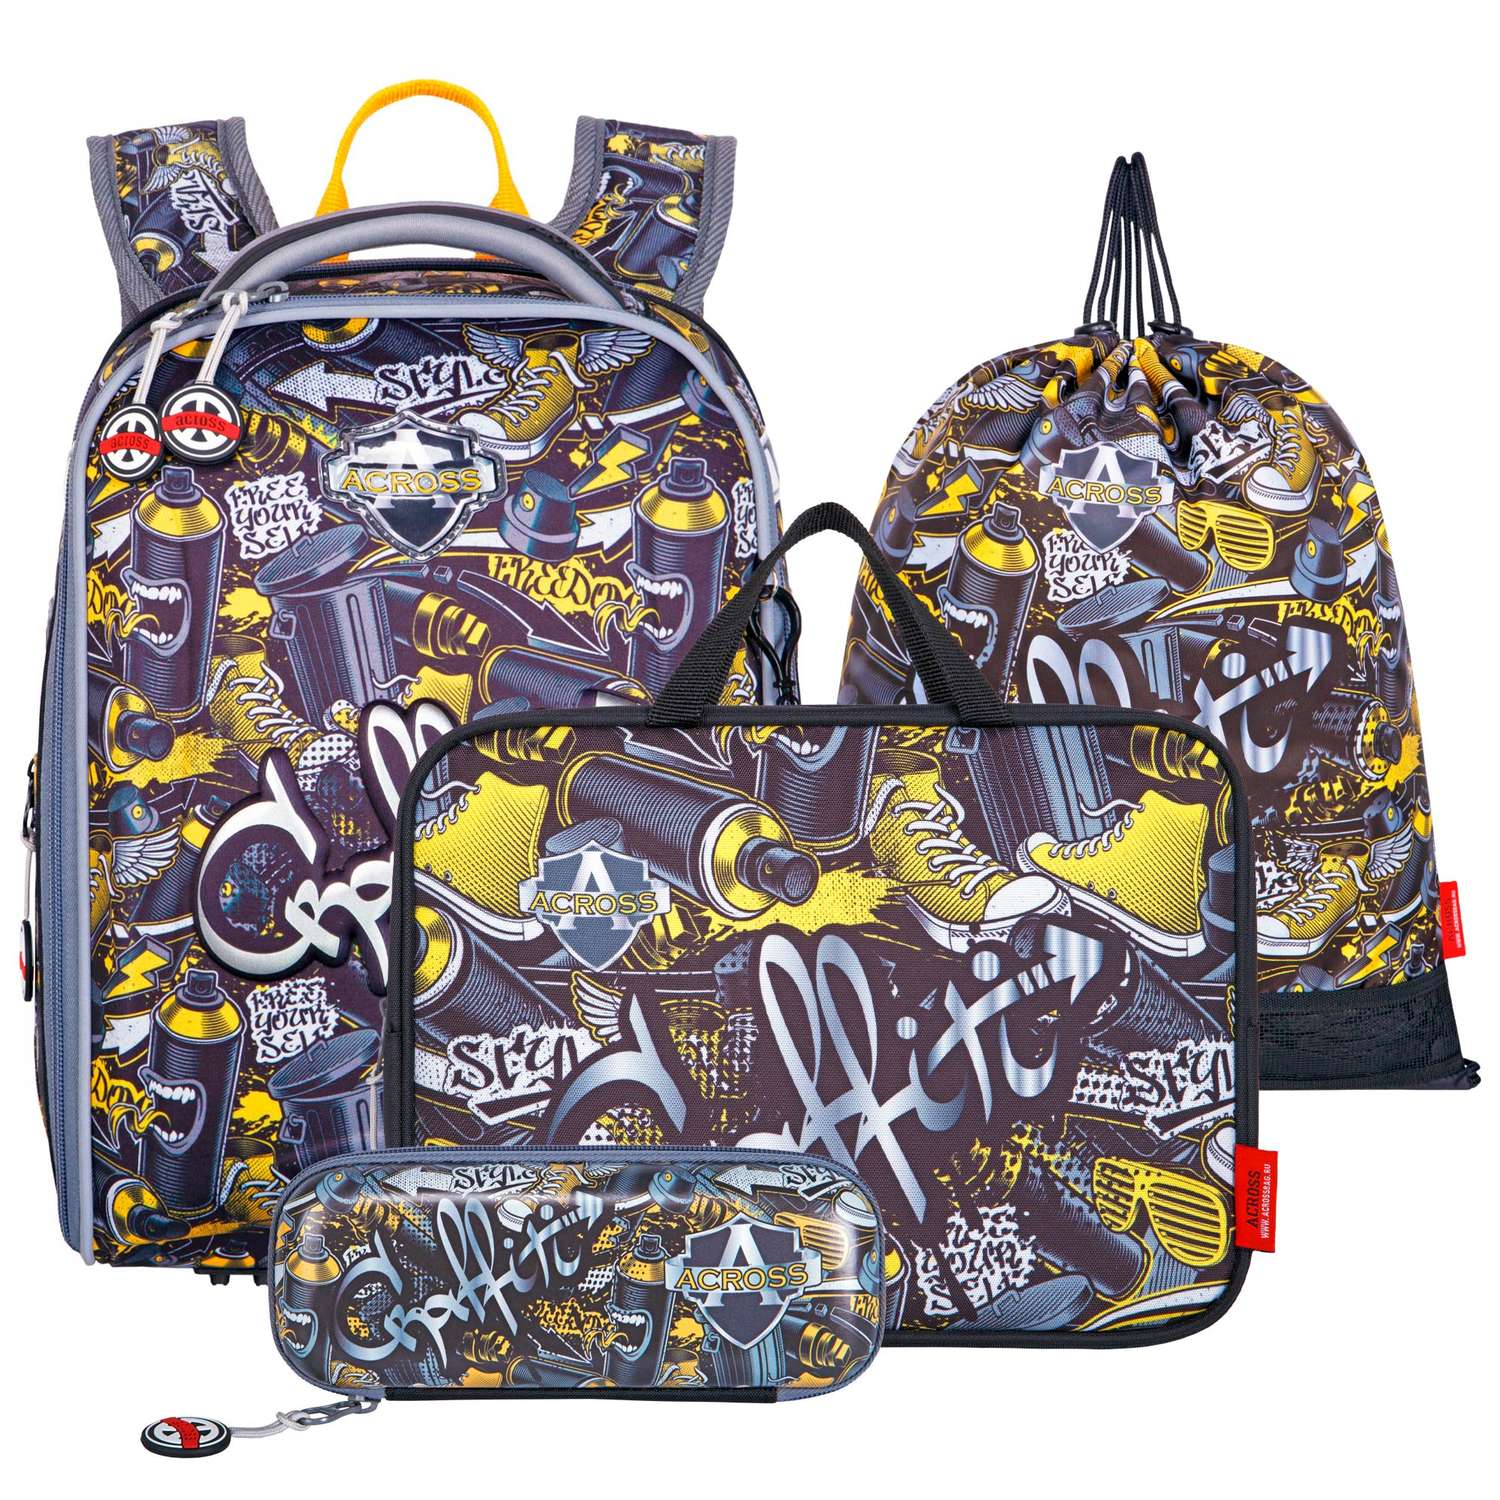 Рюкзак школьный с наполнением ACROSS ACR22-490-1 мешок д/обуви+пенал+ папка+брелок - фото 1